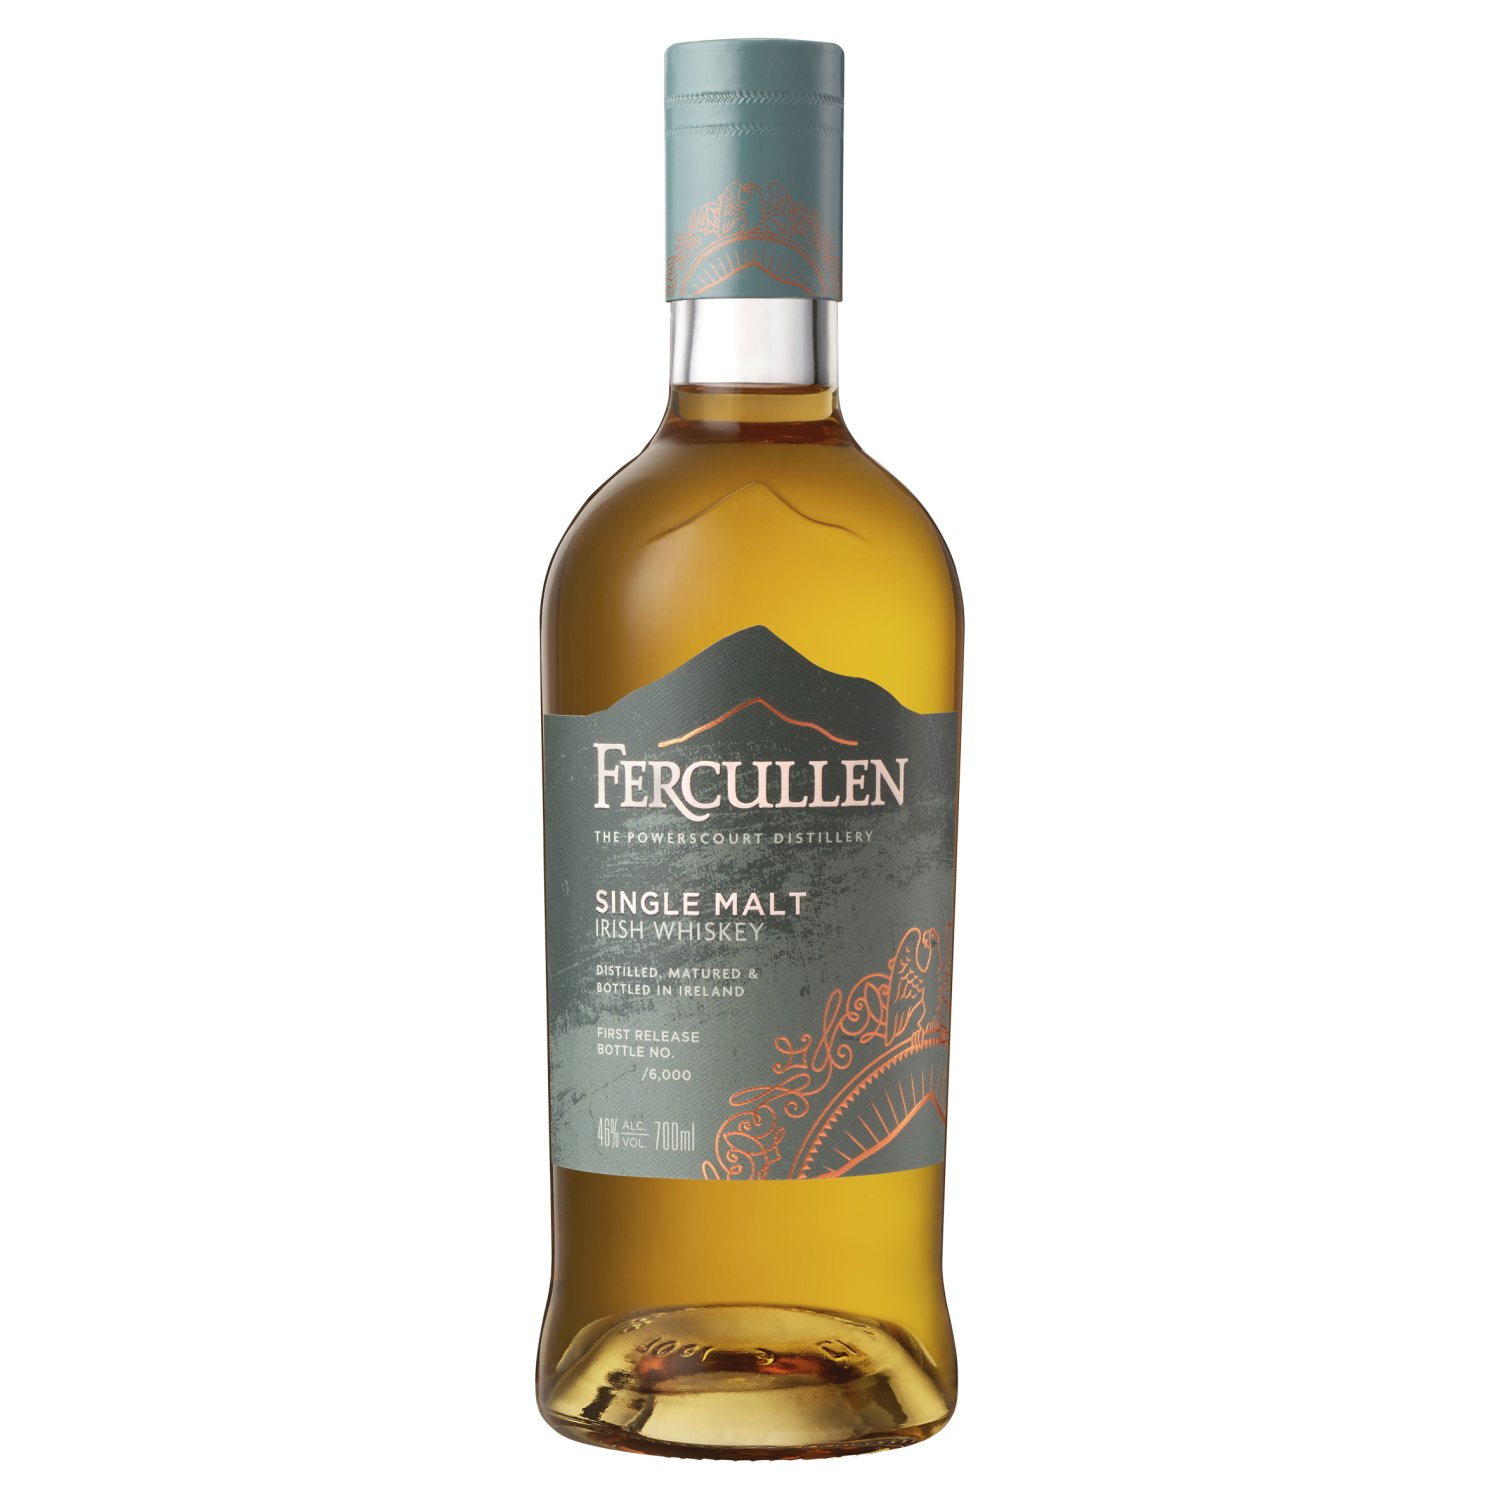 Fercullen Single Malt Irish Whiskey Bottle (70 cl)